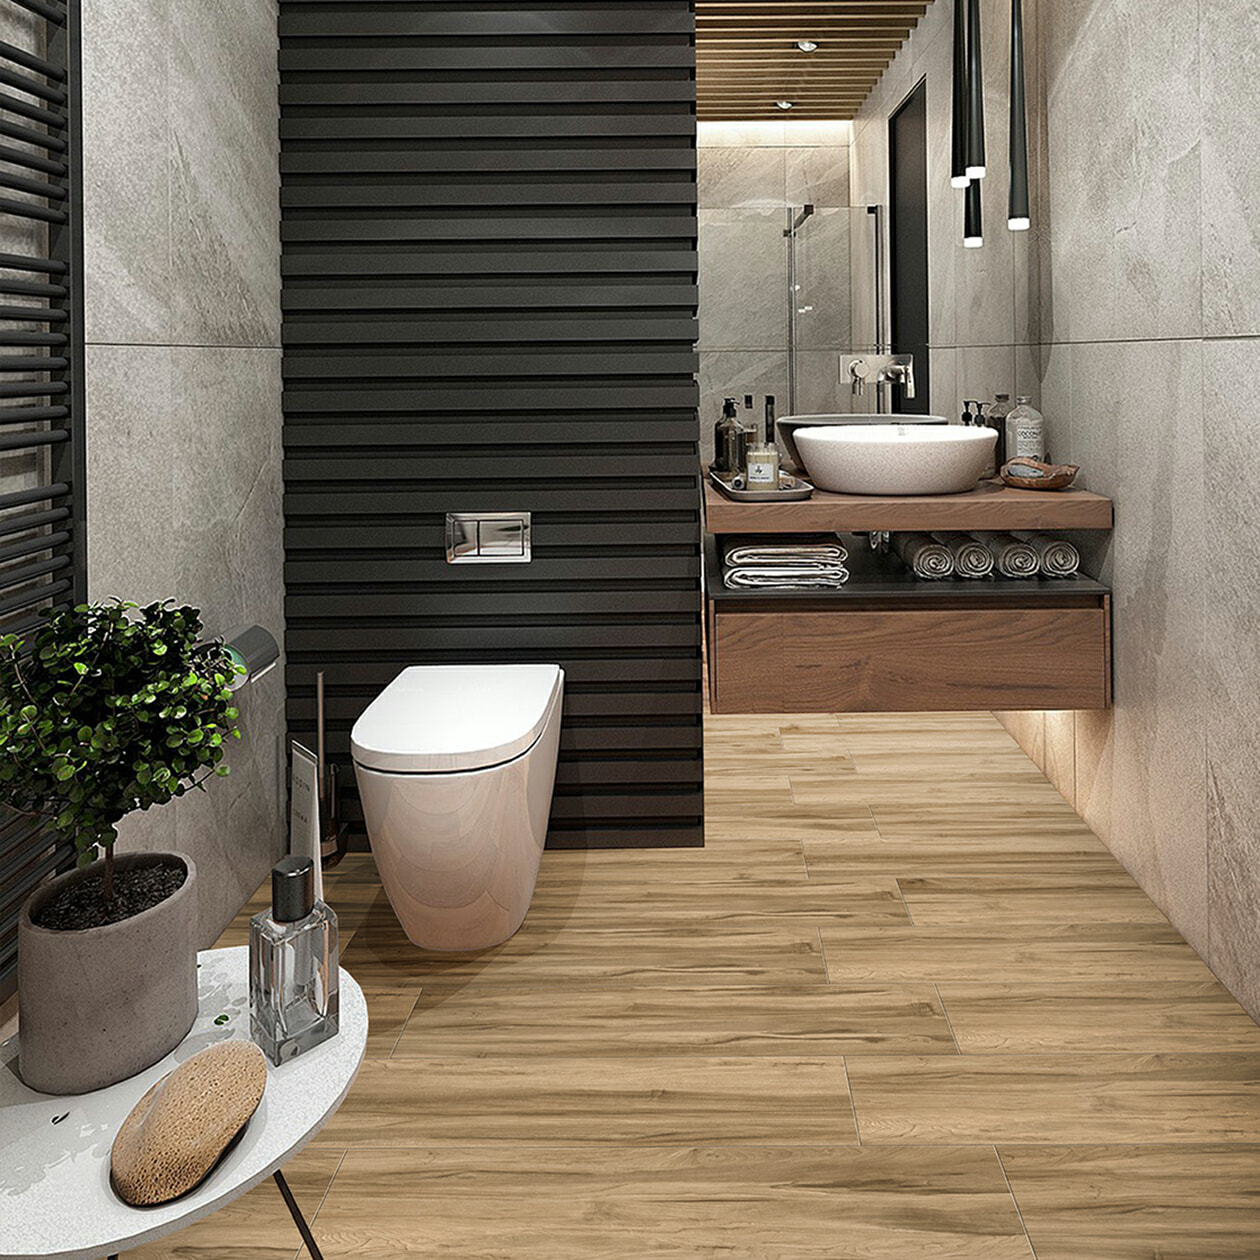 VITTO vân gỗ nâu ấm áp giúp không gian phòng tắm hiện đại, sang trọng